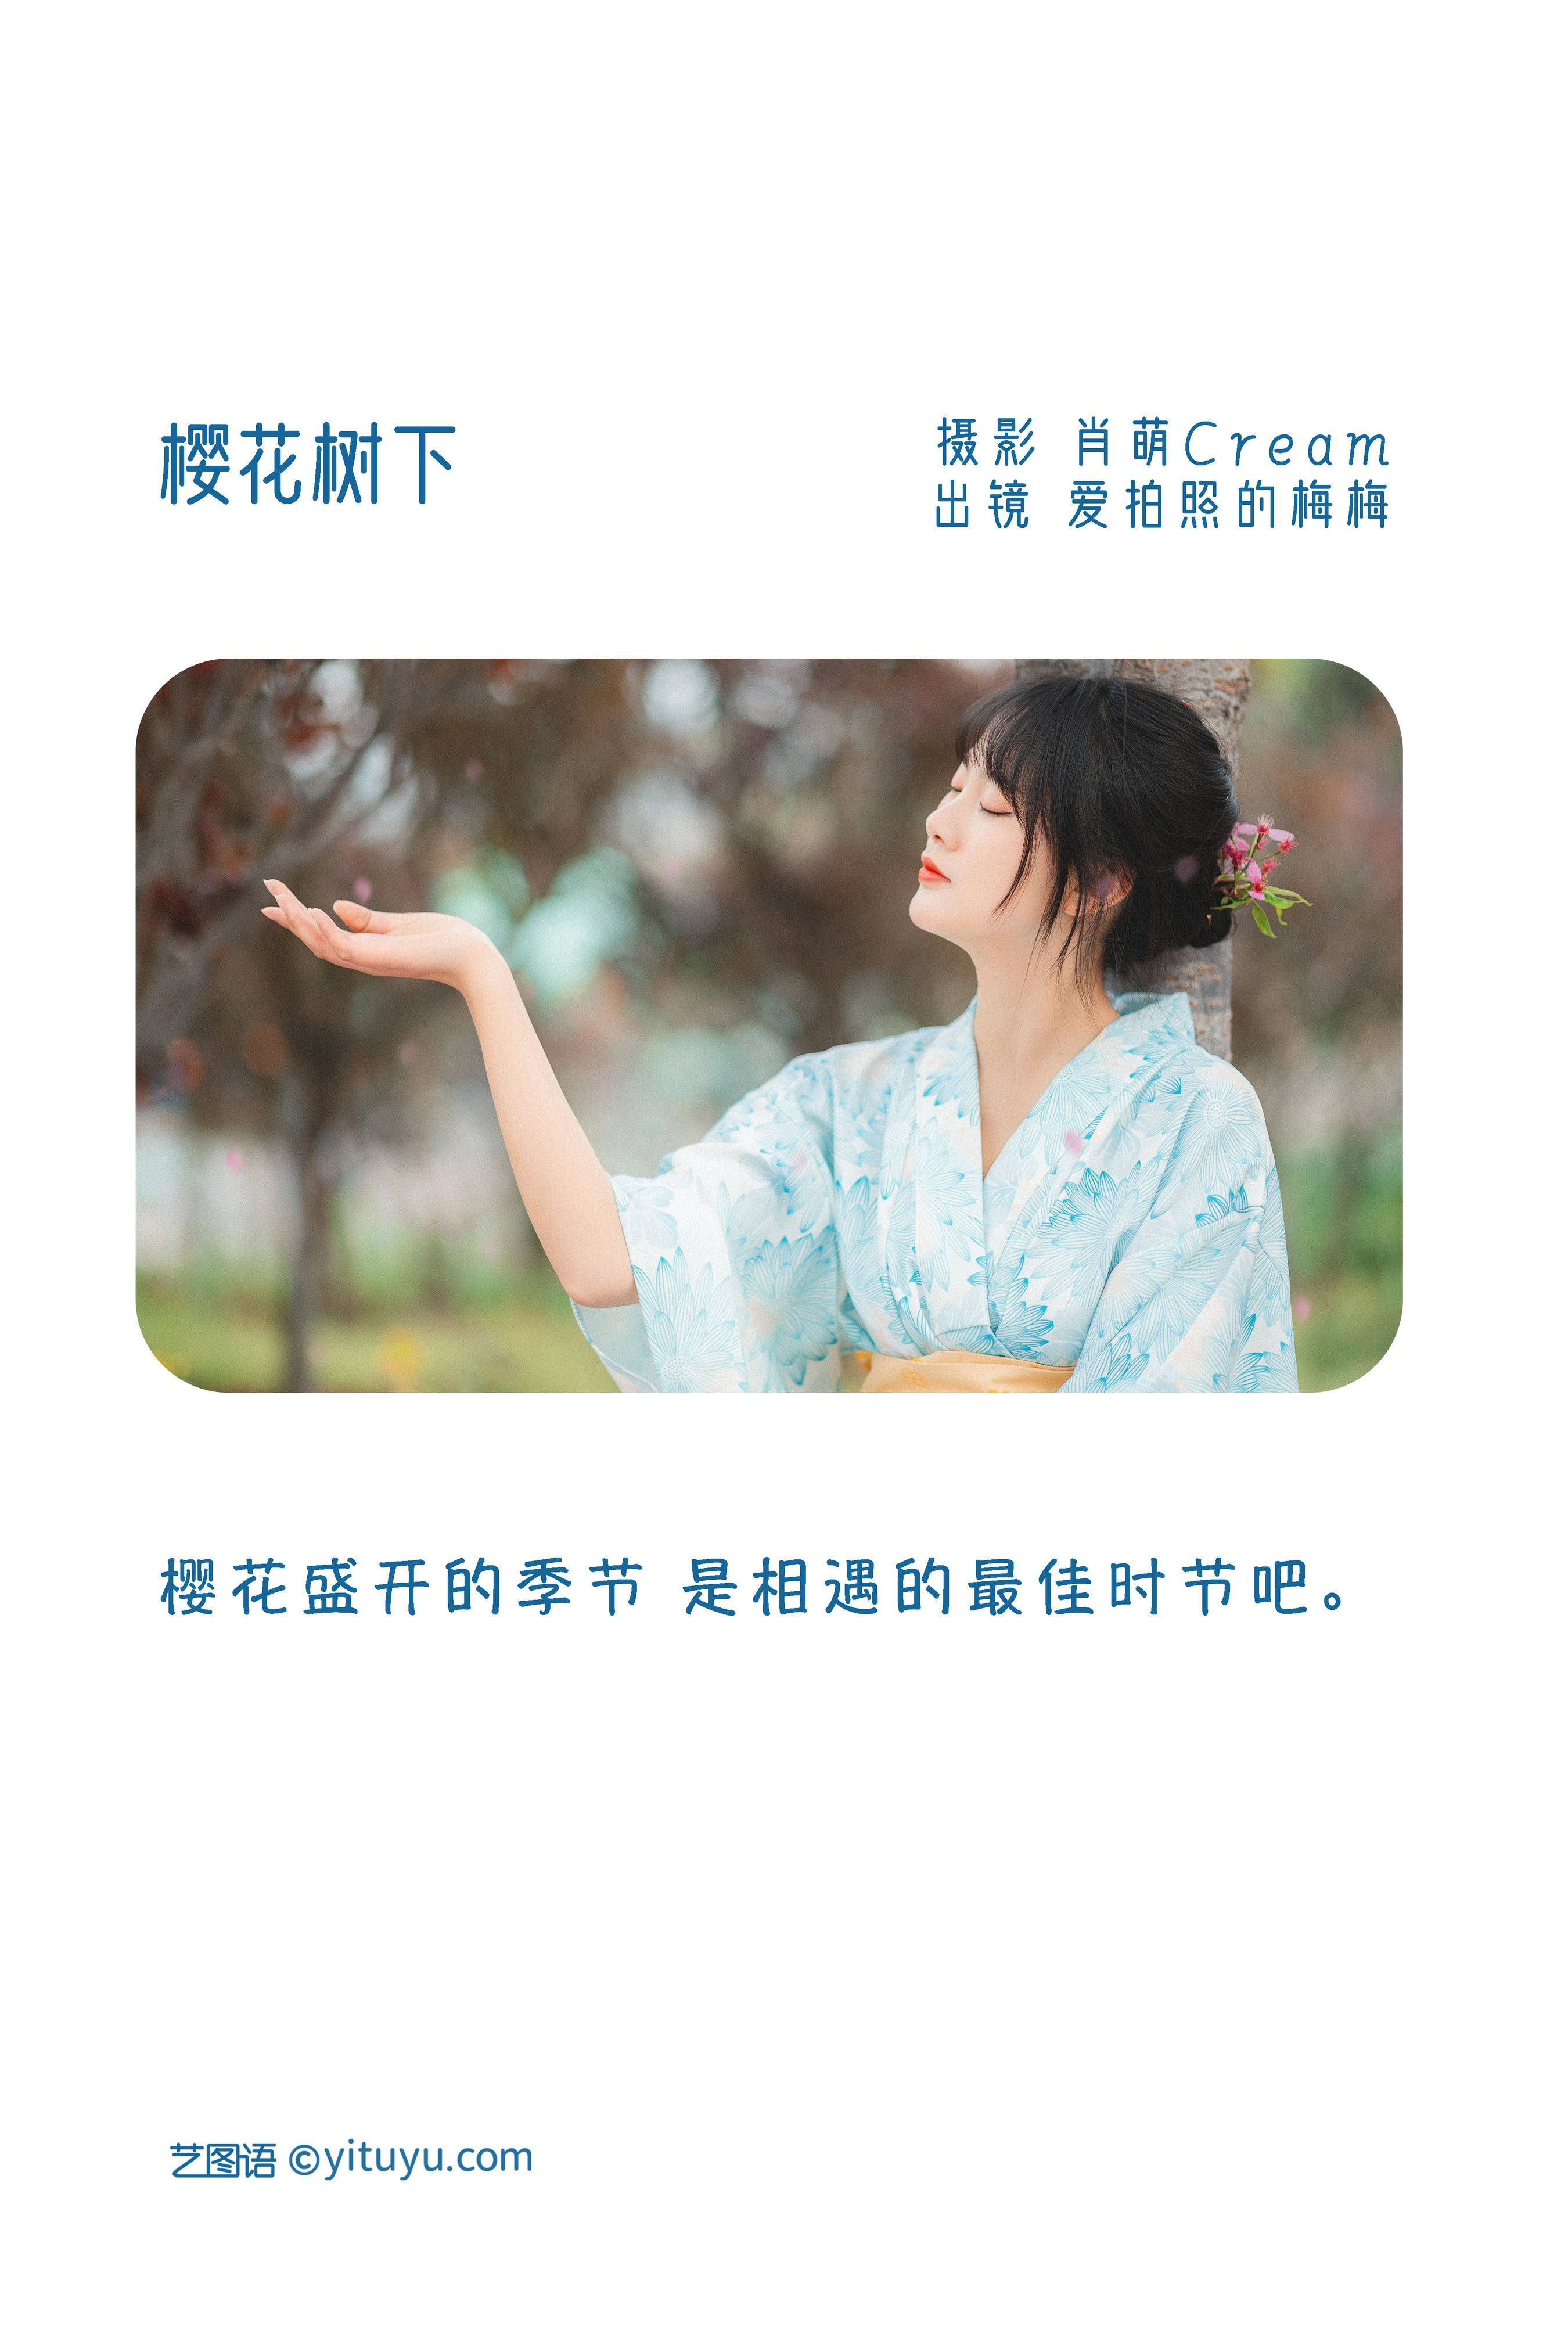 樱花树下 日式和风 樱花 少女&YiTuYu艺图语-2